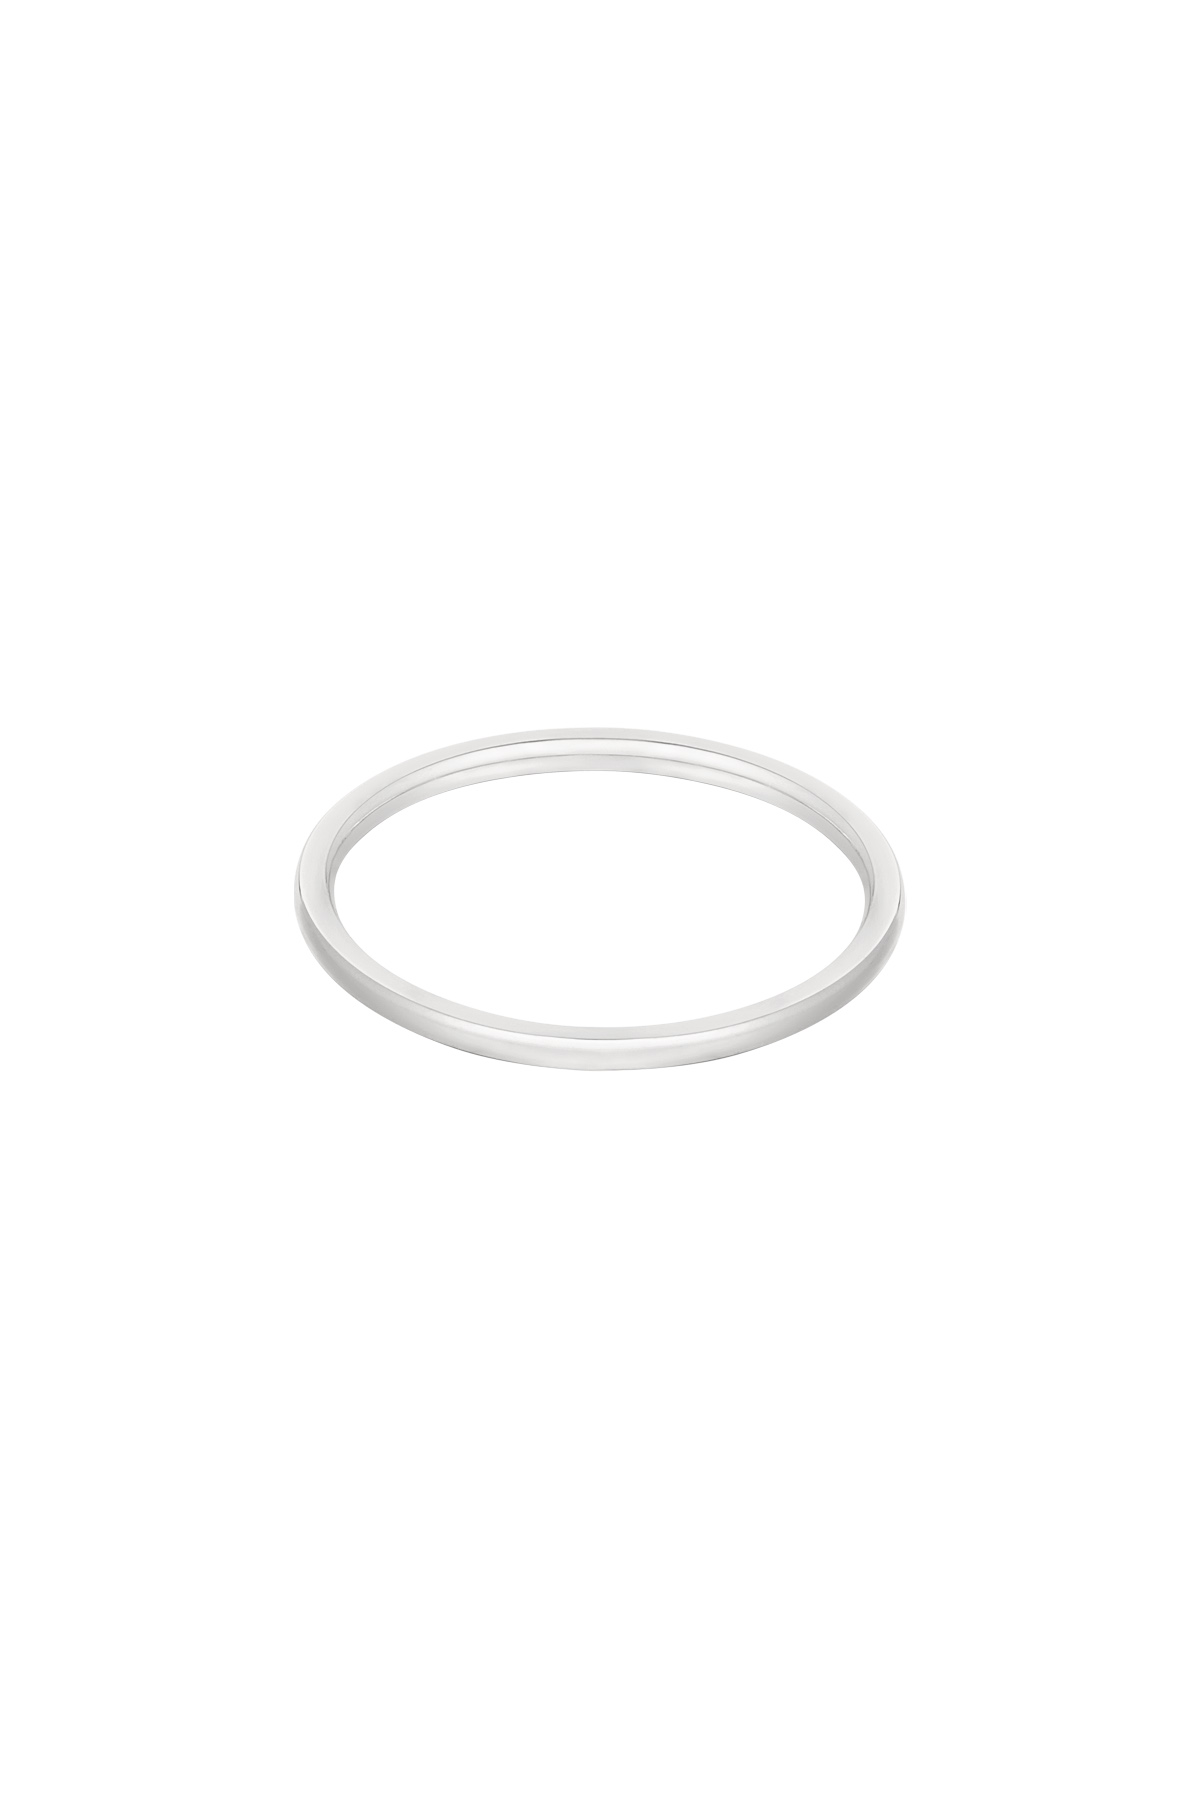 Ring minimalistisch - Silber h5 